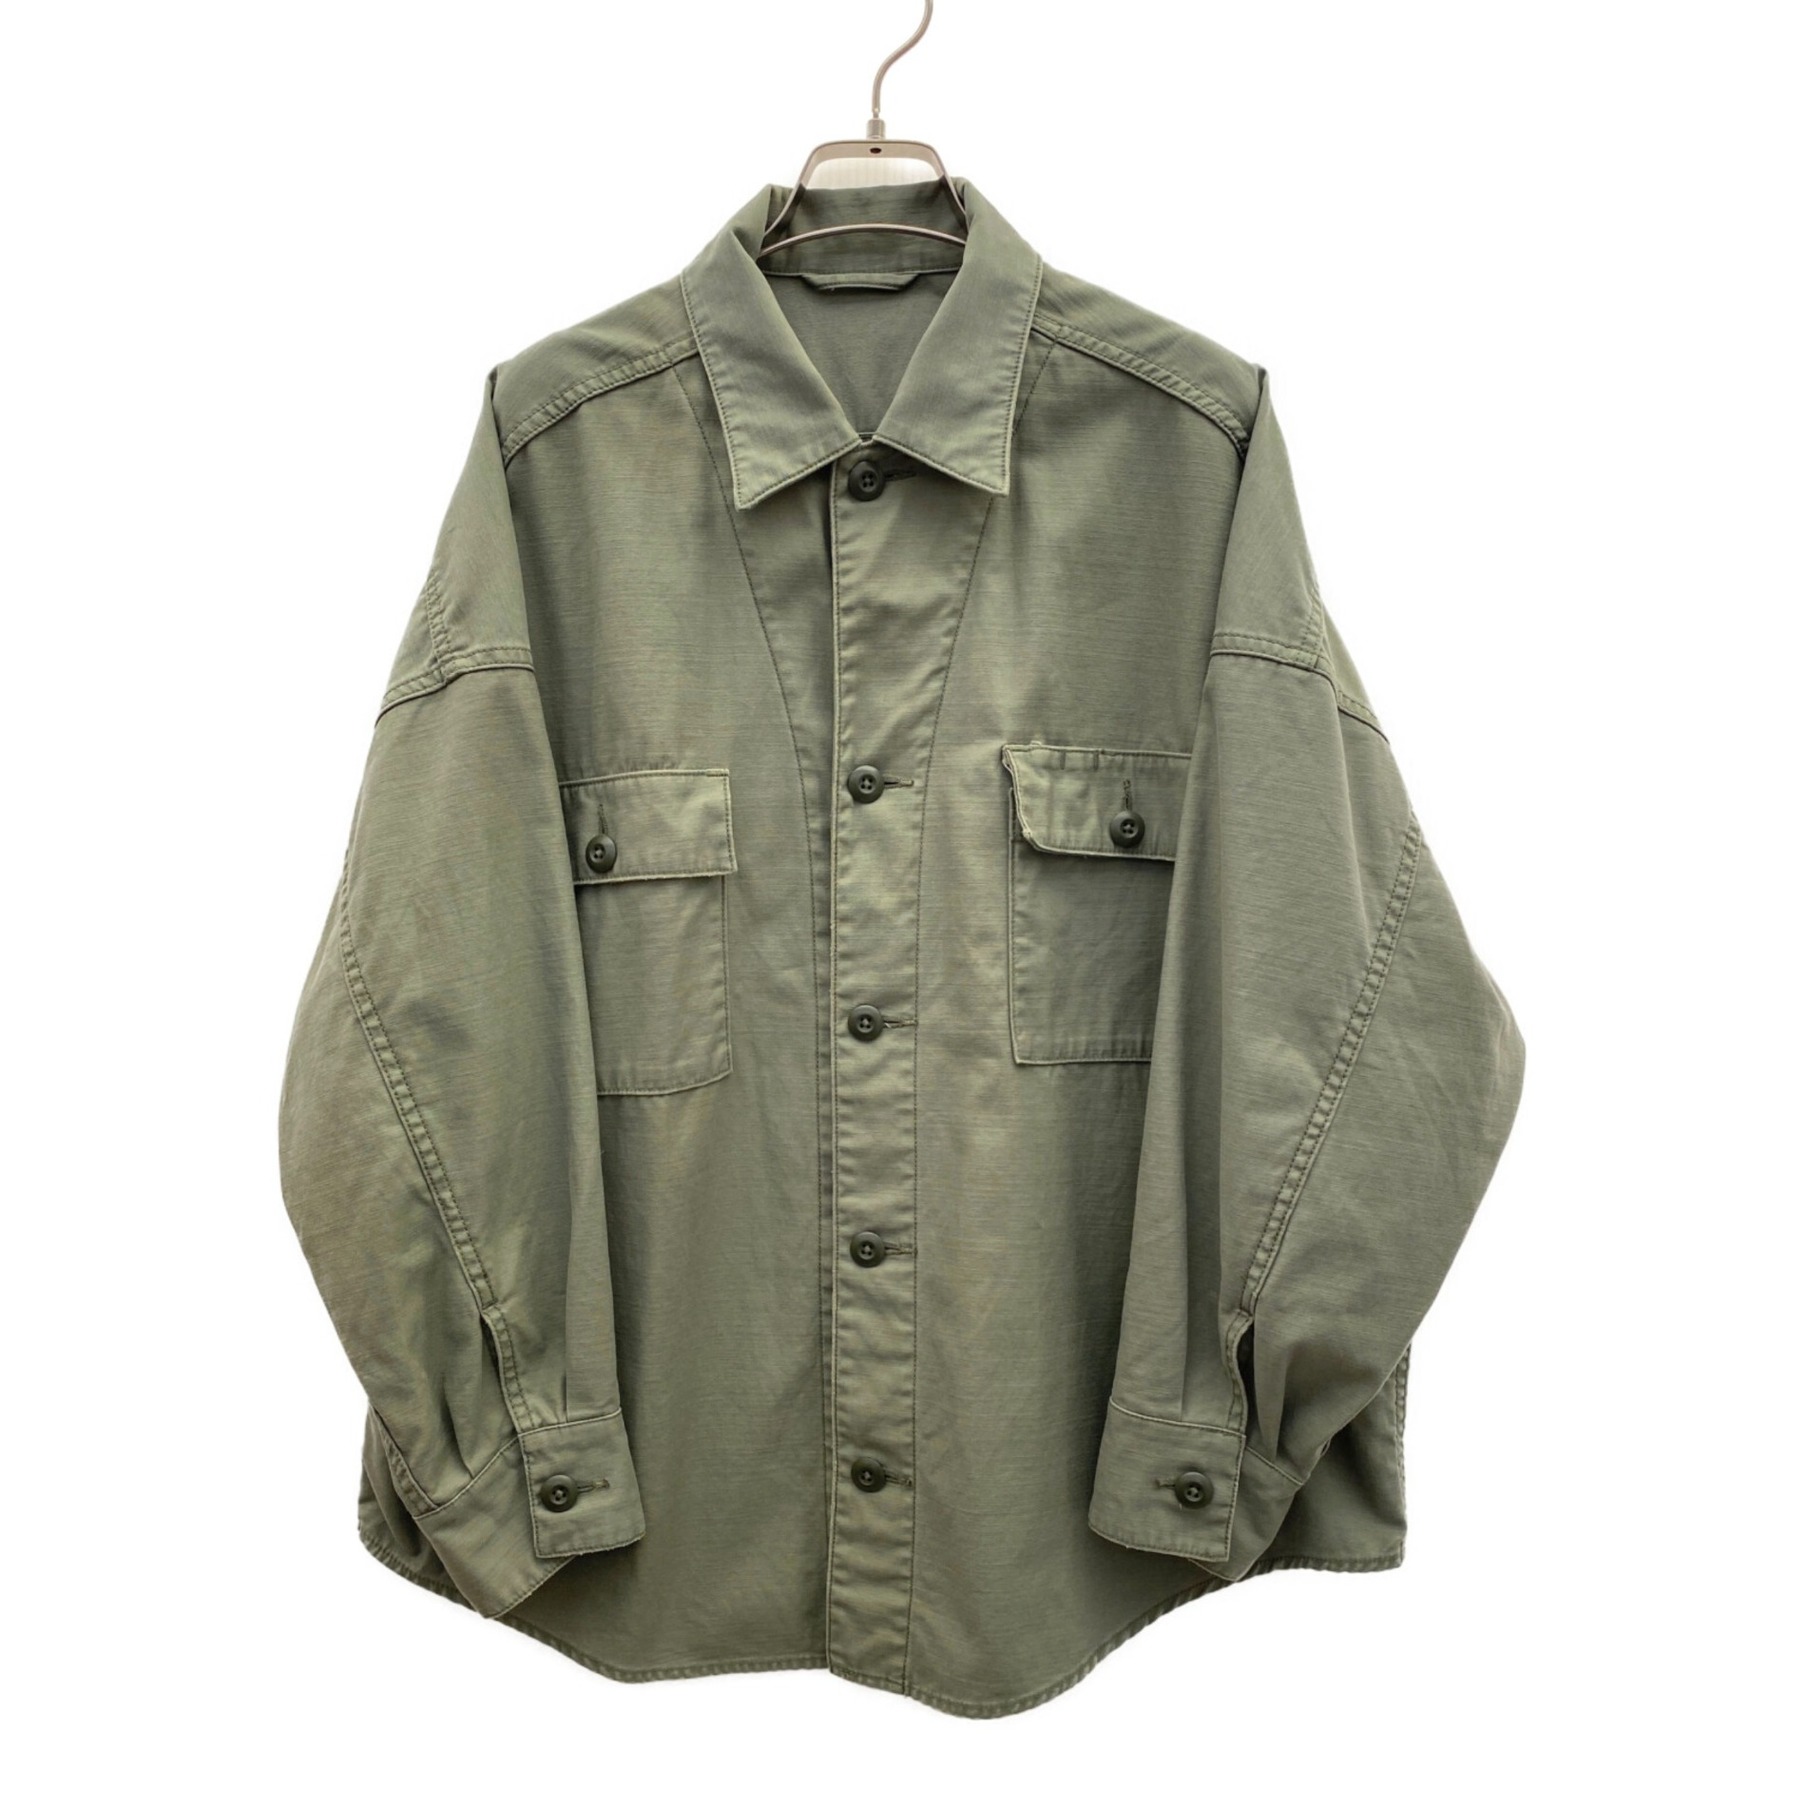 Plage (プラージュ) Army シャツジャケット カーキ サイズ:38